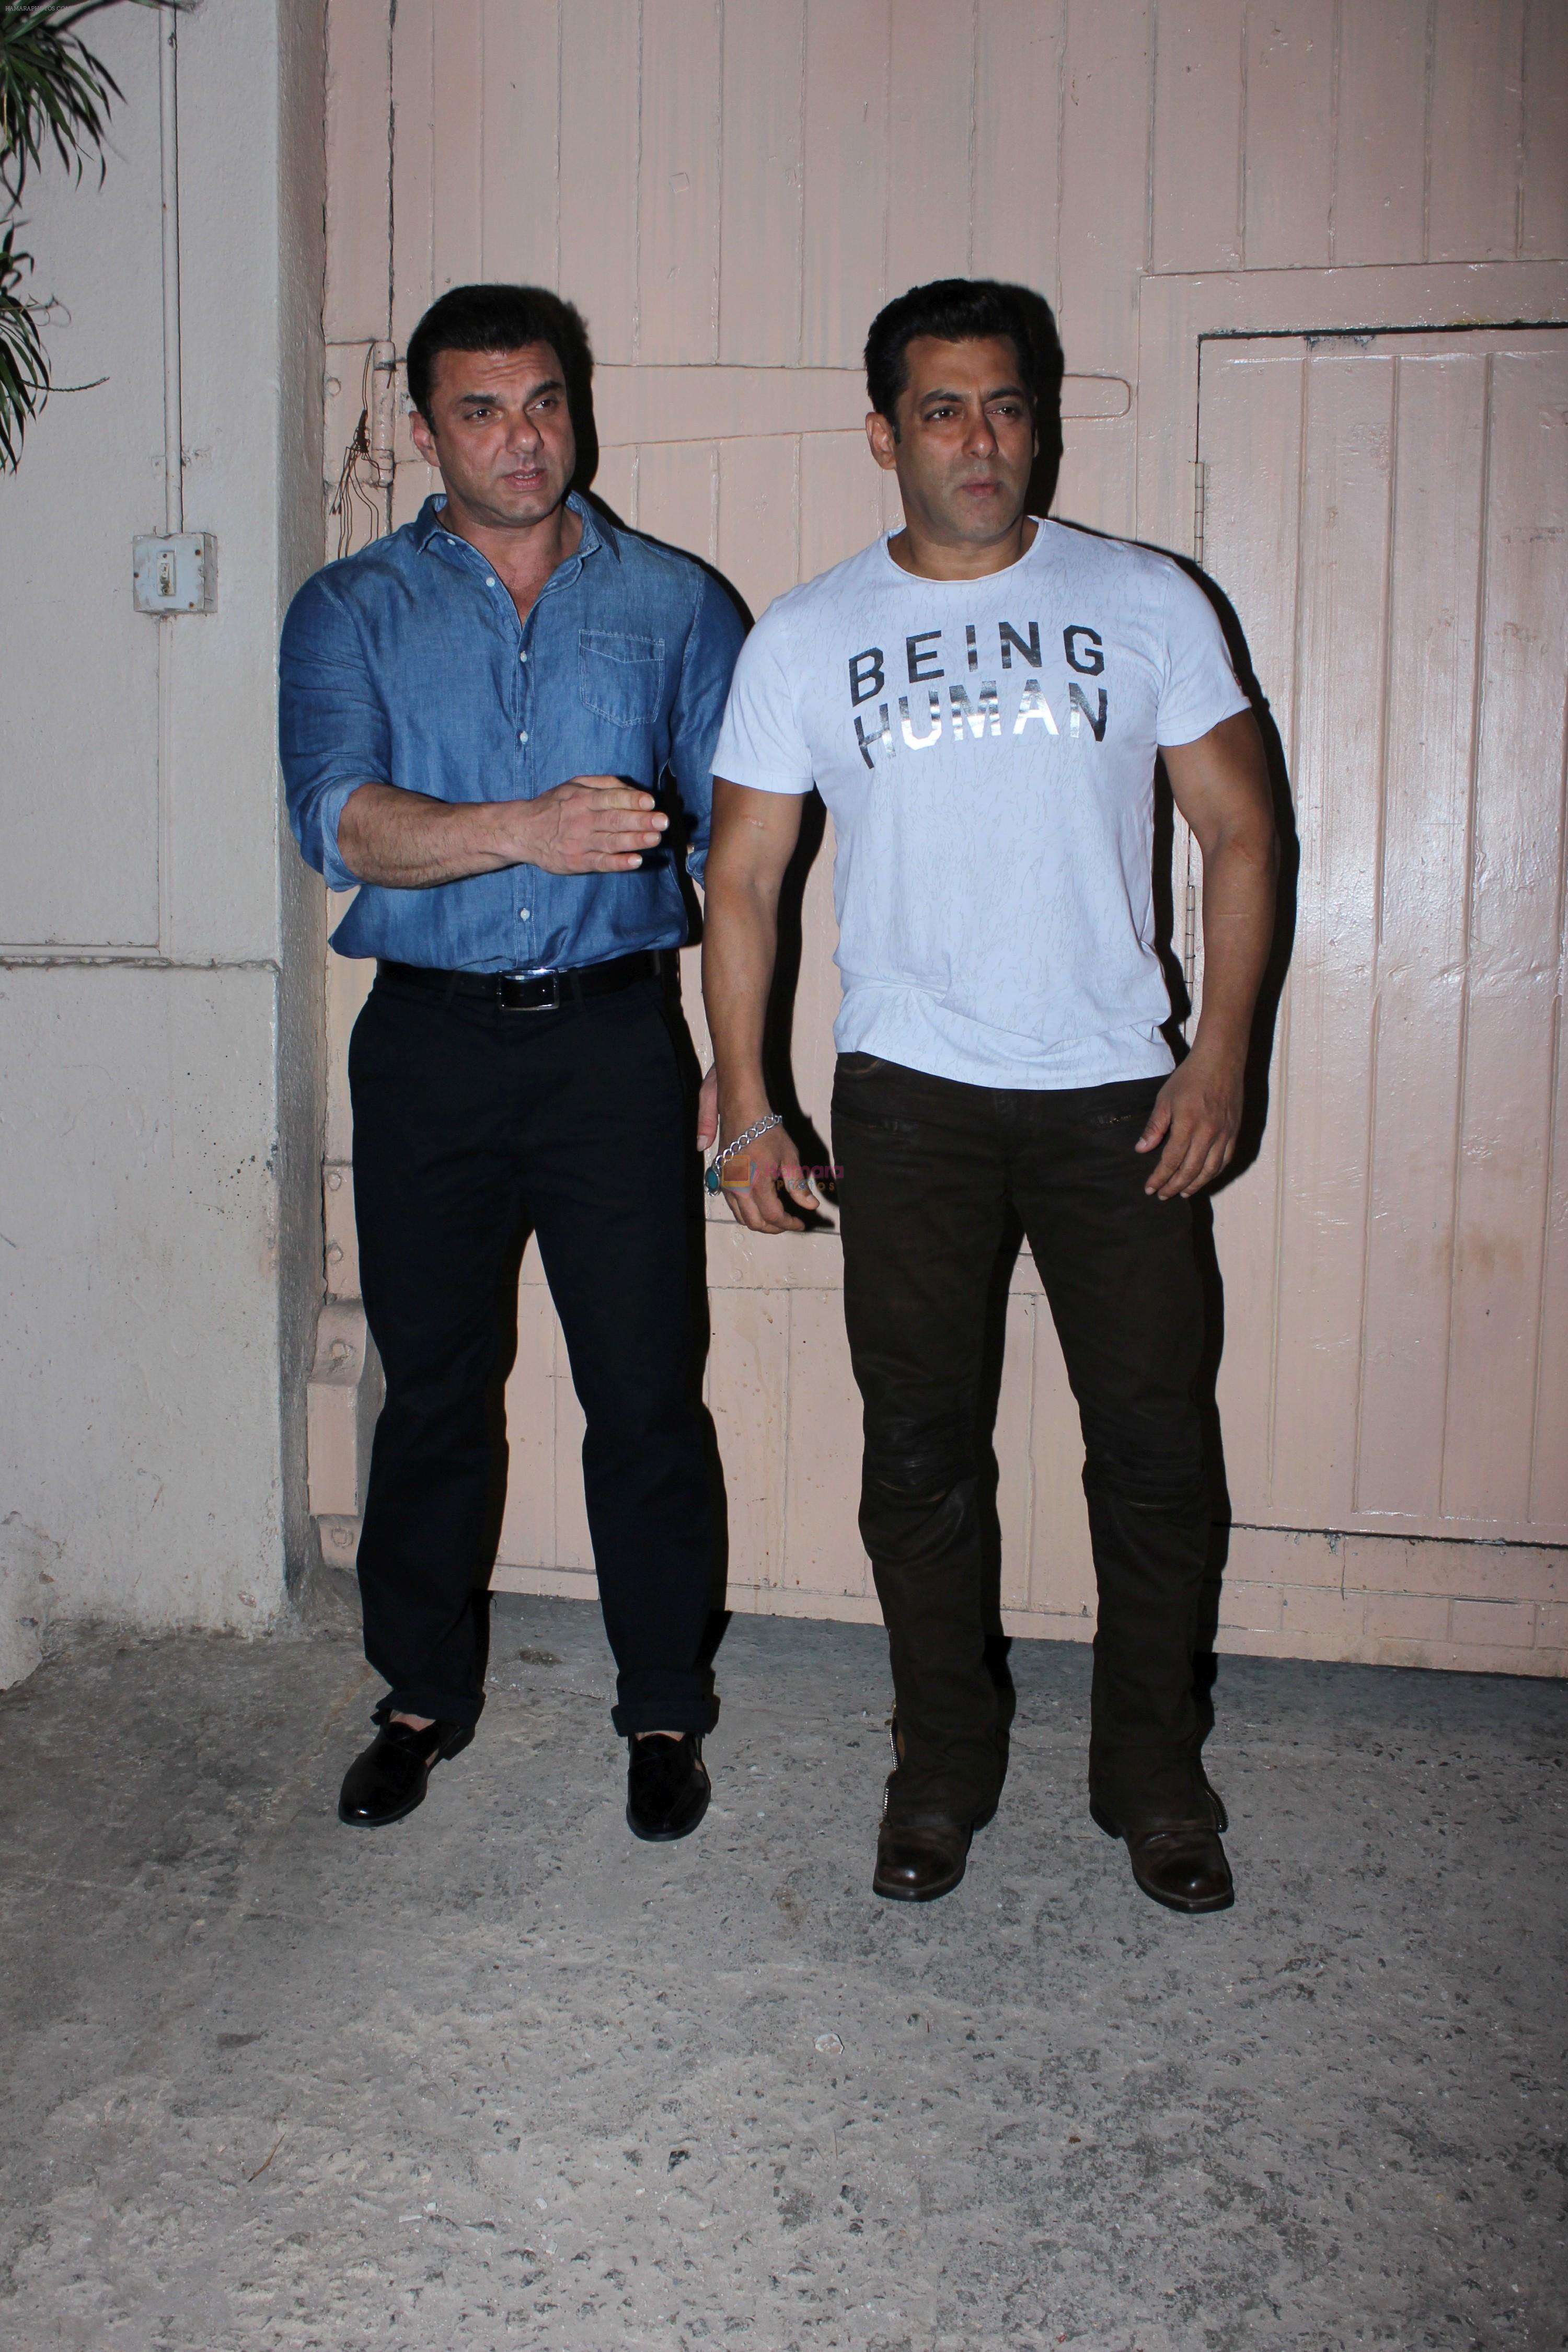 Salman Khan, Sohail Khan spotted at Mehboob on 13th June 2017